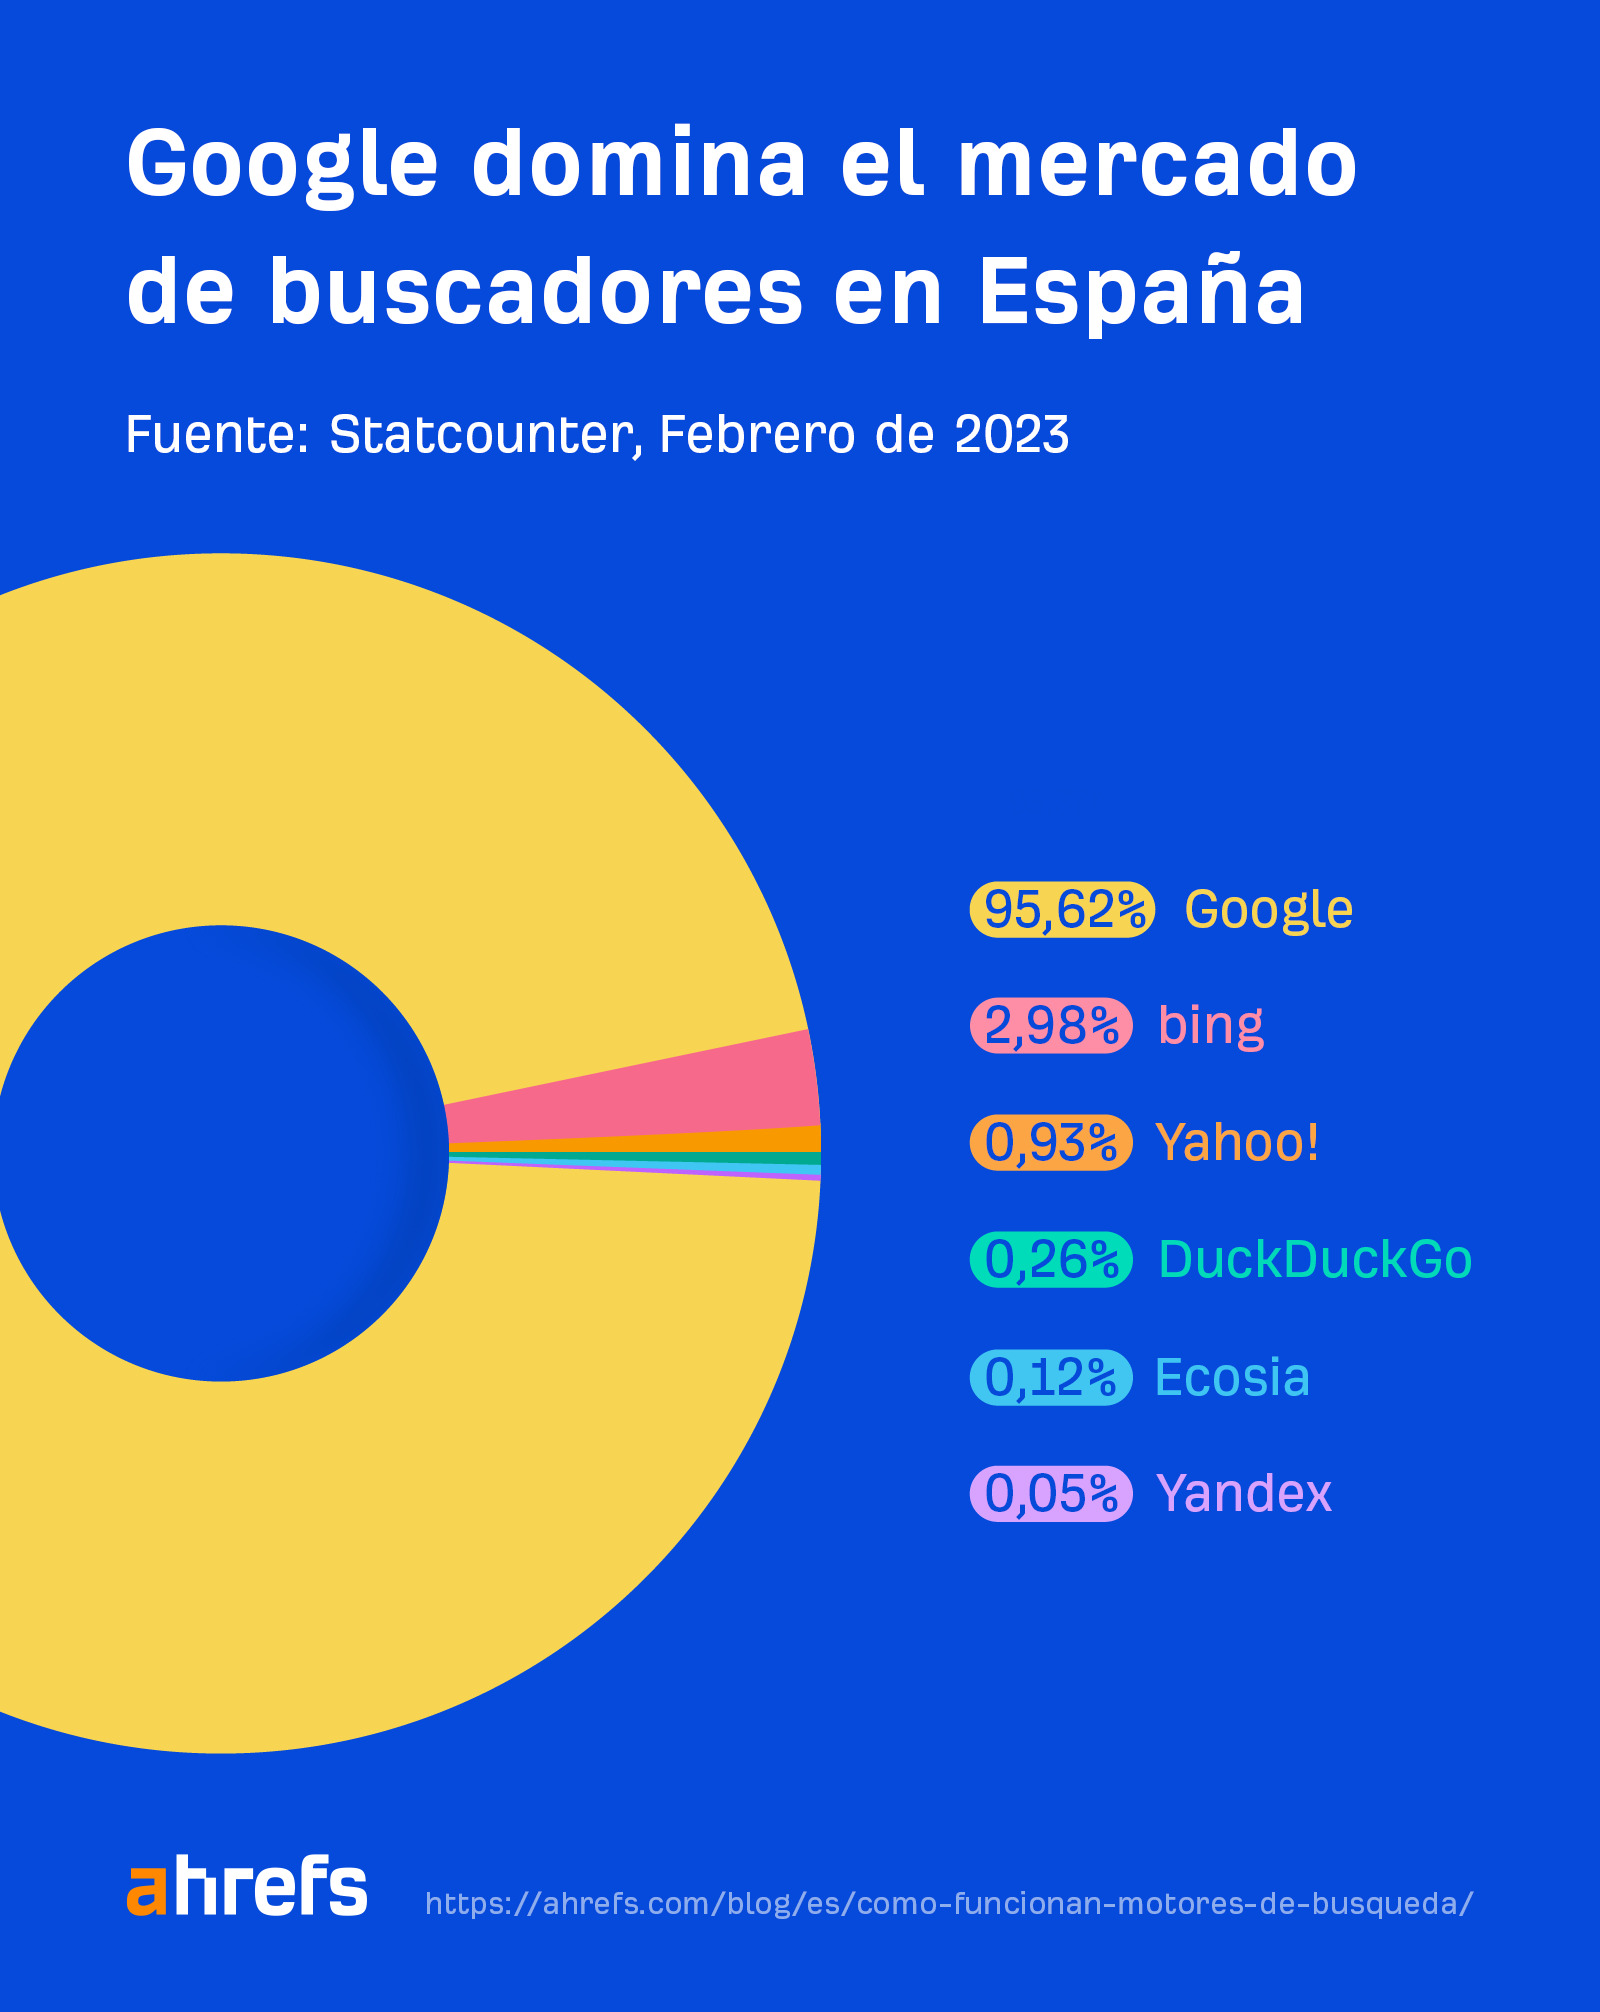 Google domina el mercado de las búsquedas en España, con un 95,62% de cuota de mercado